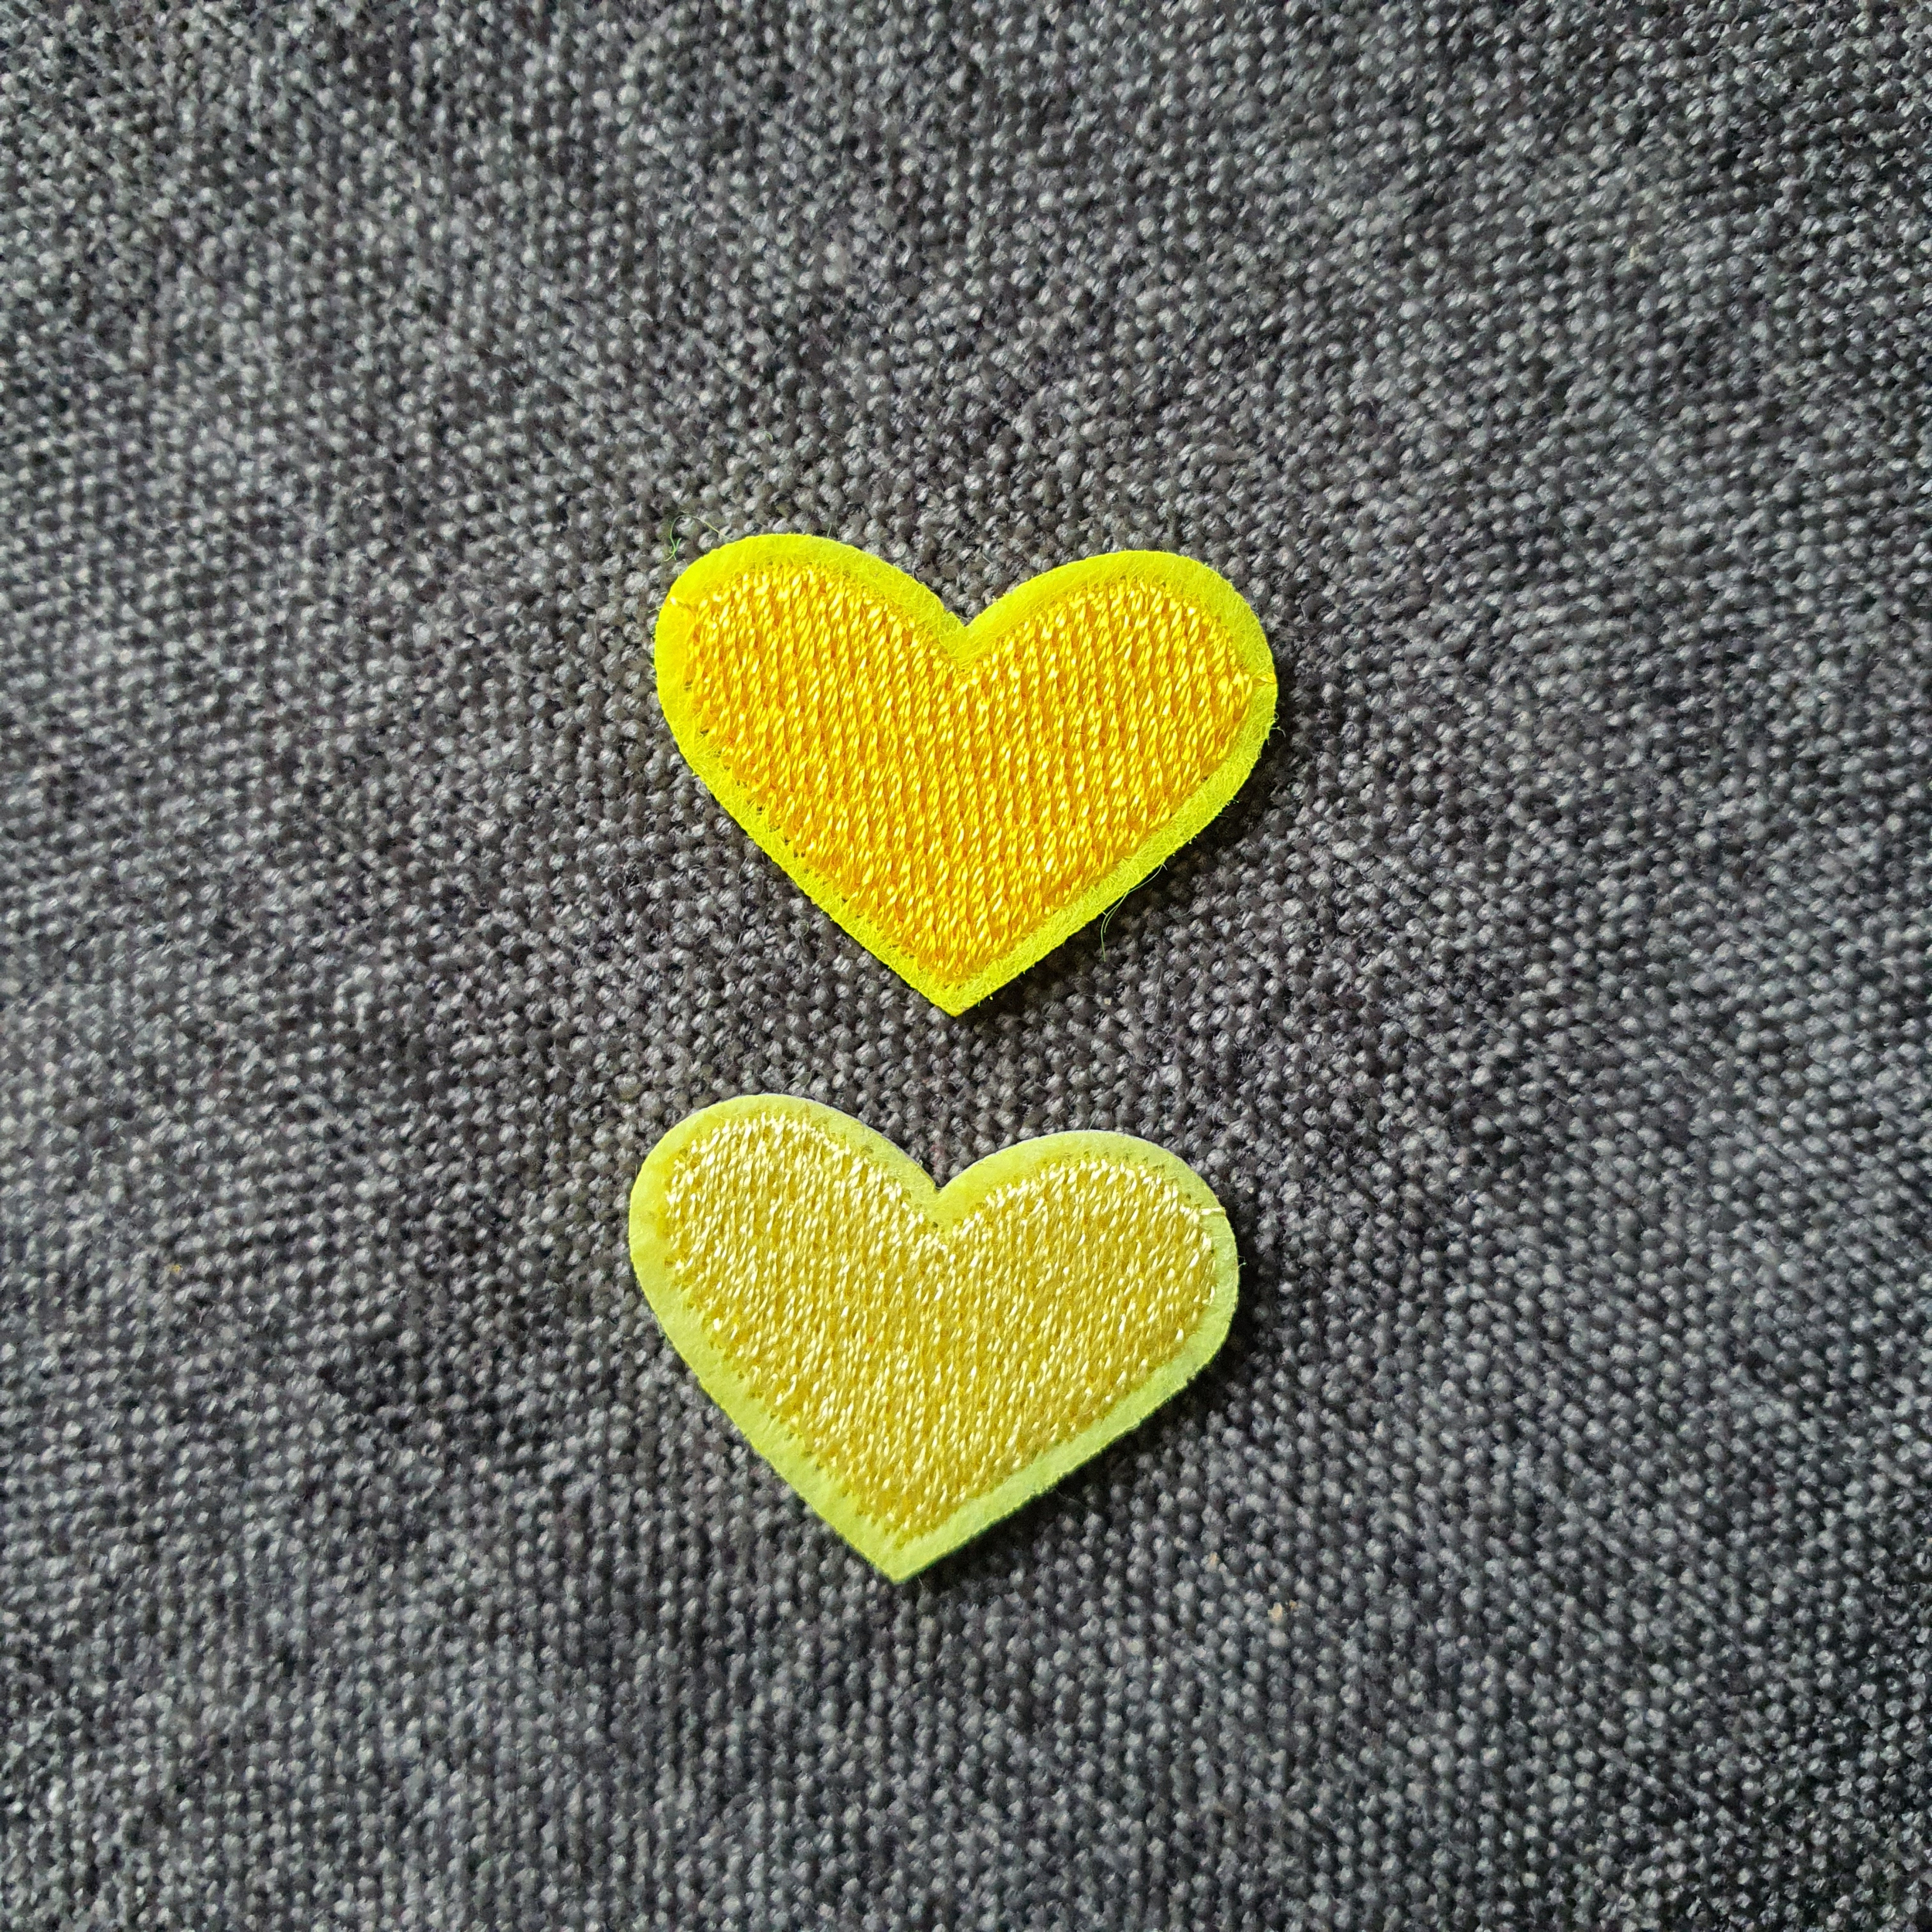 Patch thermocollant duo de petits cœurs colorés jaune